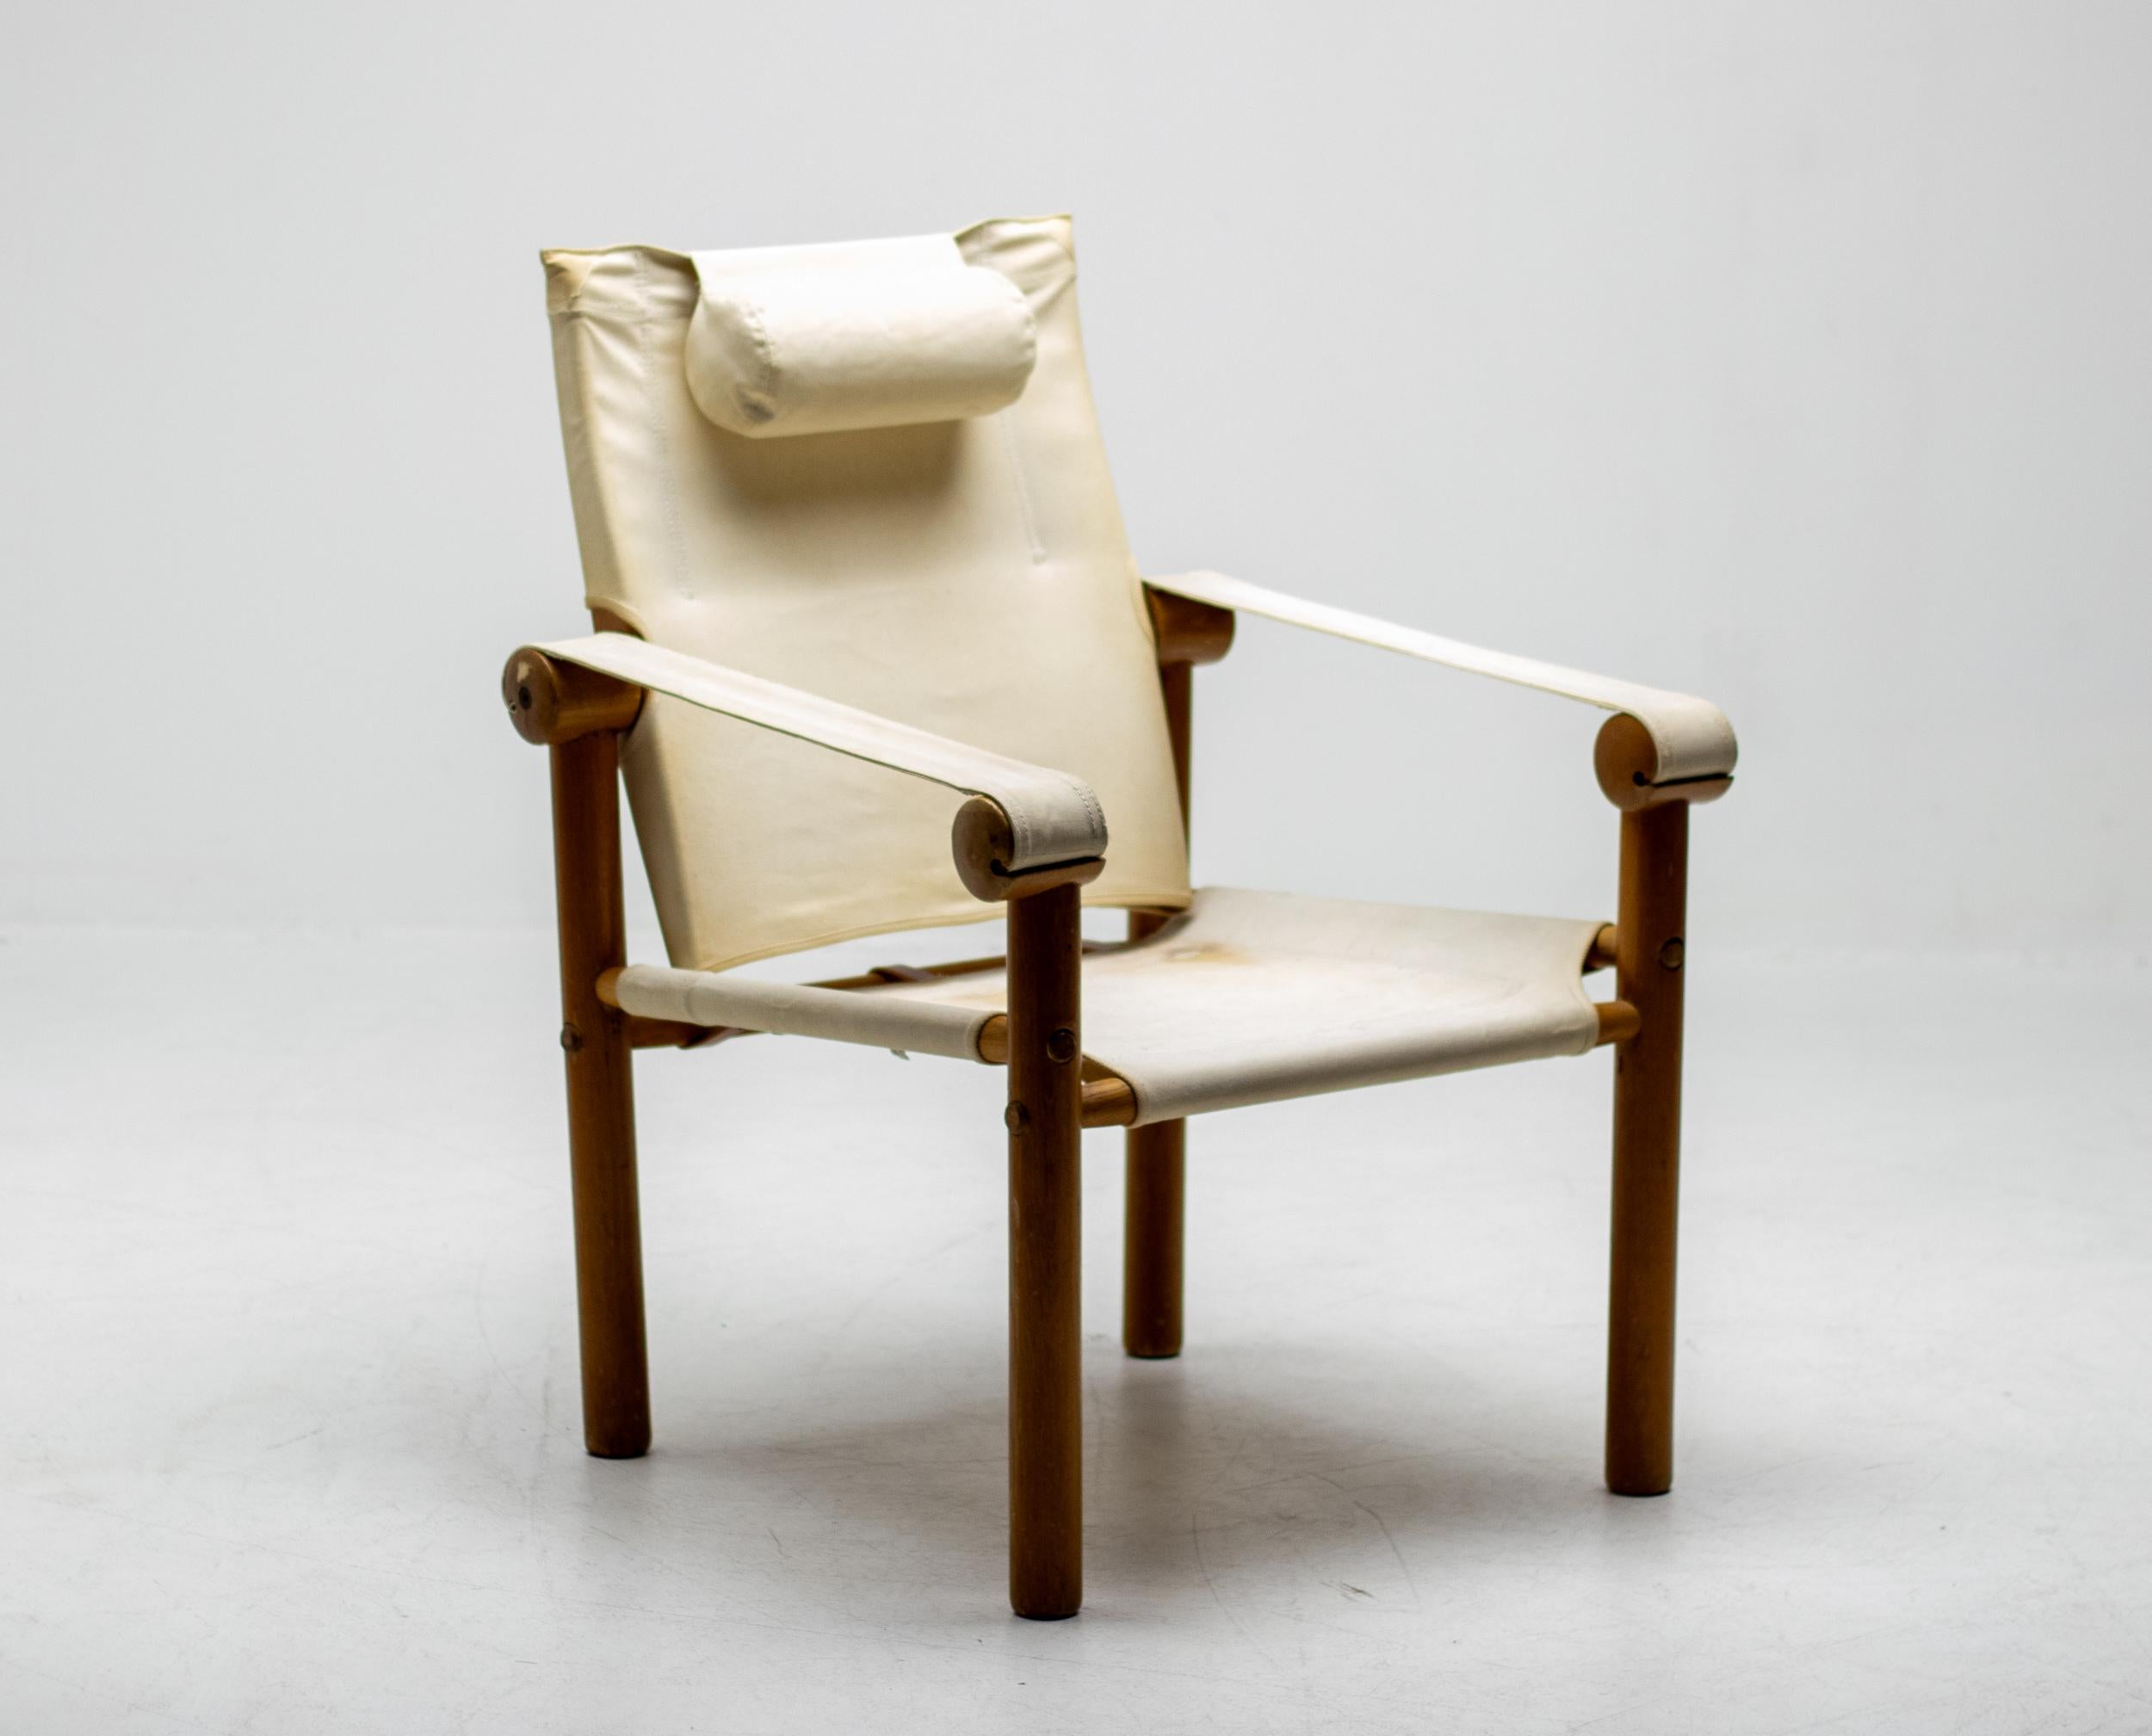 Außergewöhnlich seltener Loungesessel aus Esche und Segeltuch aus den 1970er Jahren von Zanotta.
Der Stuhl ist sehr stabil und lässt sich auf Wunsch komplett zerlegen.
In wunderbarem Vintage-Zustand. Alle Ledergürtel waren völlig ausgetrocknet und